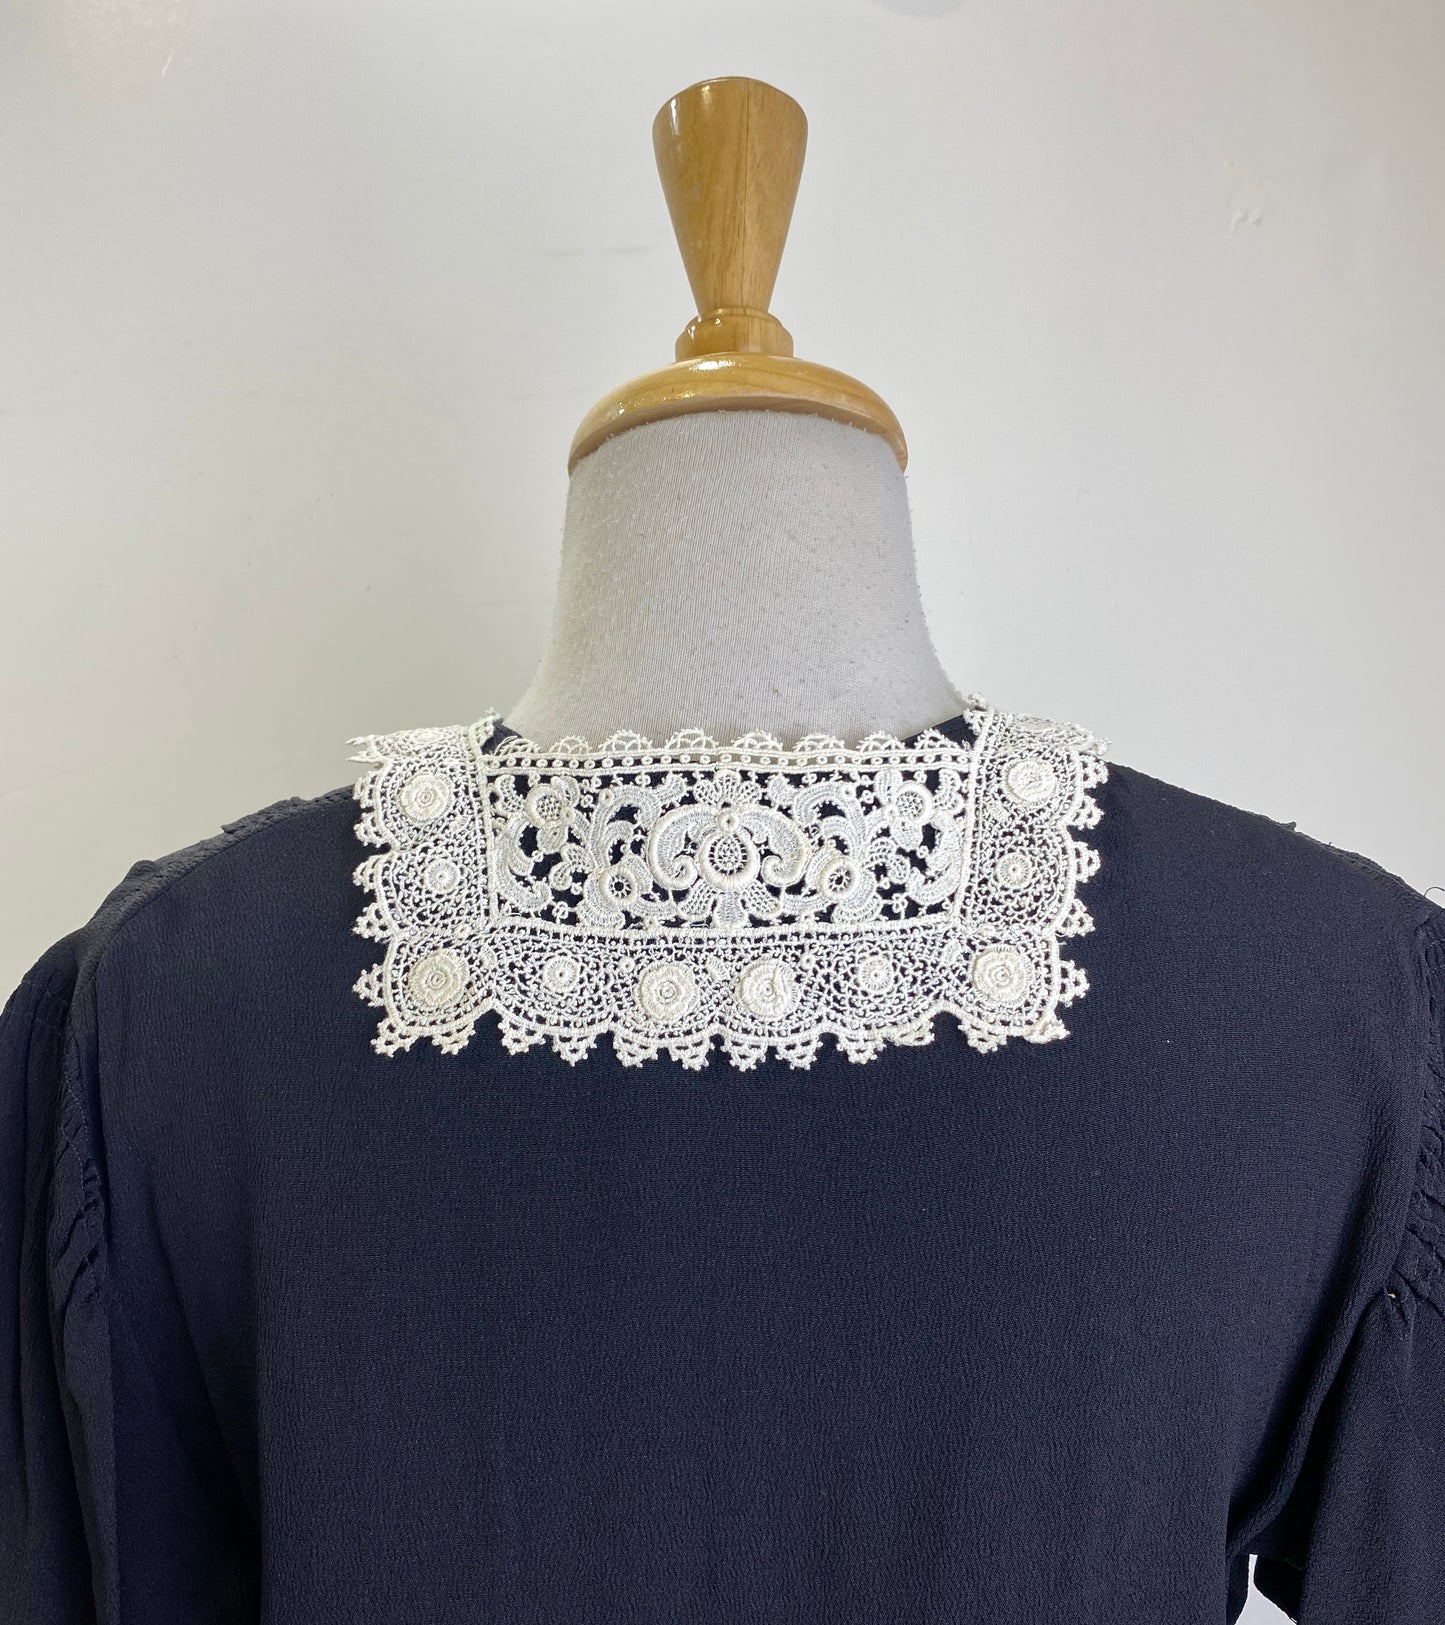 Antique Edwardian White Crochet Lace Collar